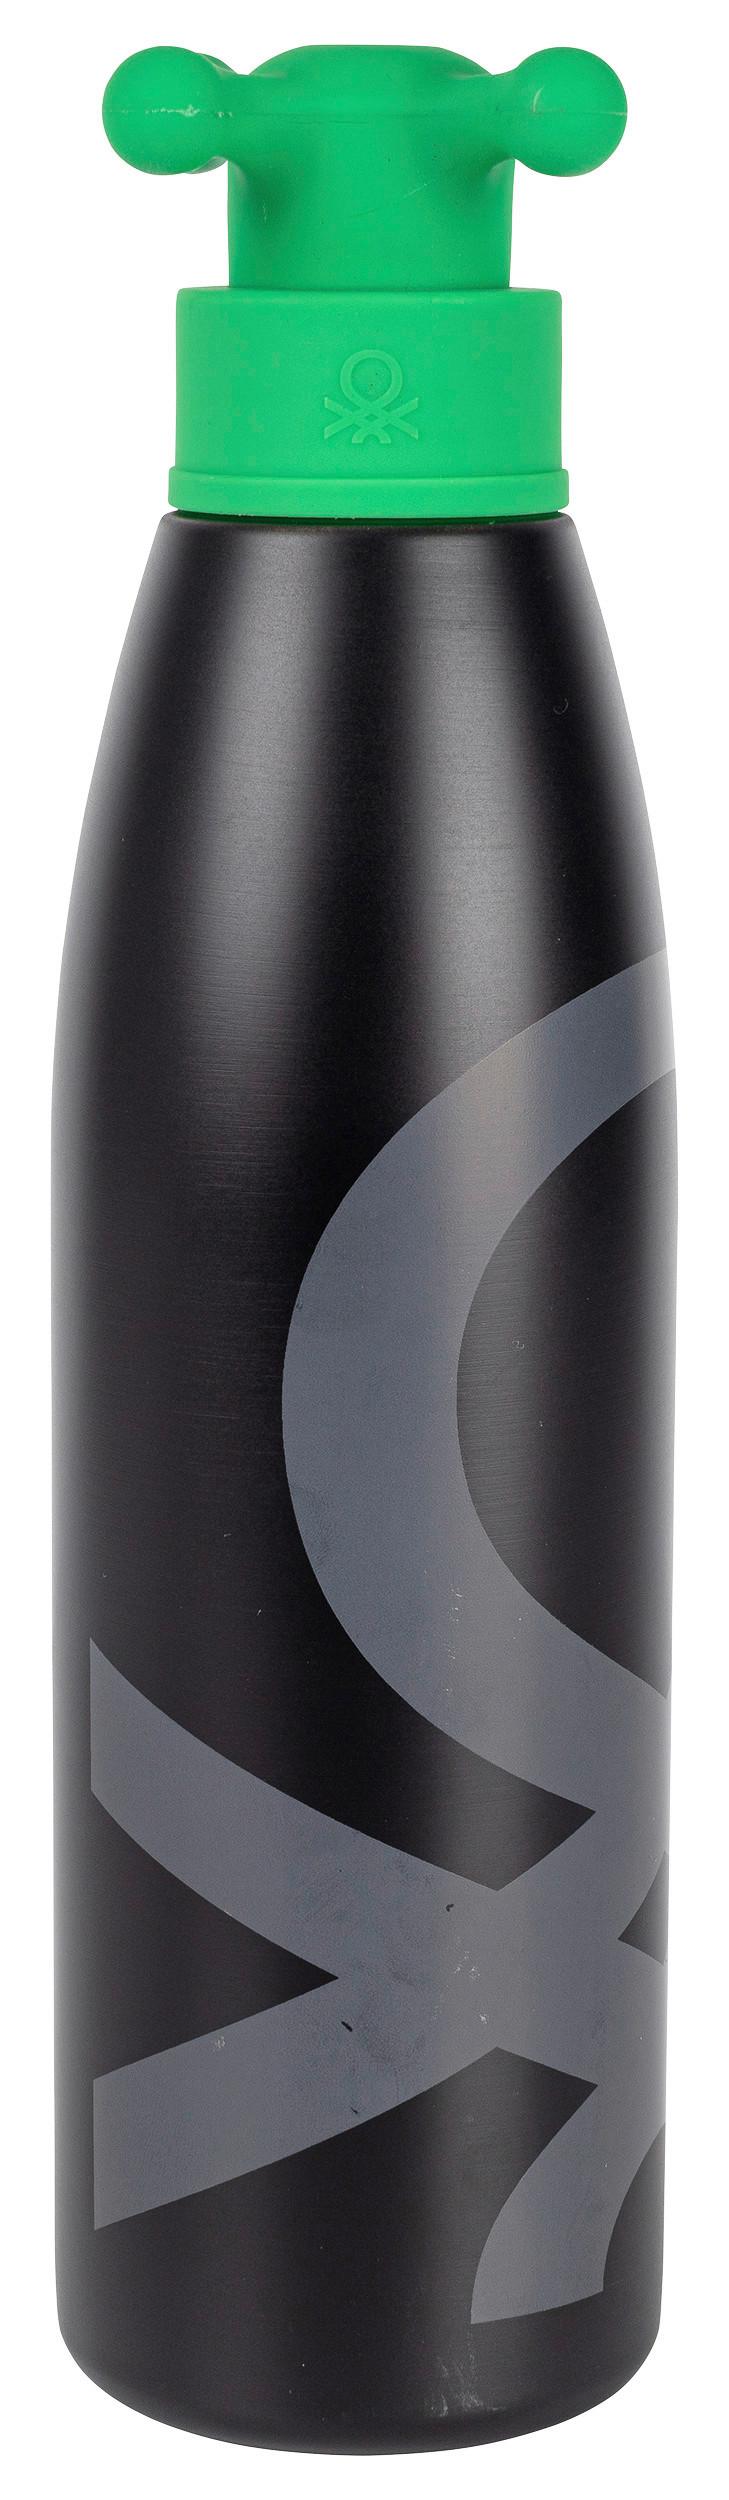 Trinkflasche Black & White 0,5 L Kunststoff Lebensmittelecht - Schwarz/Grün, Basics, Kunststoff/Metall (7,4/7/26,5cm) - Benetton